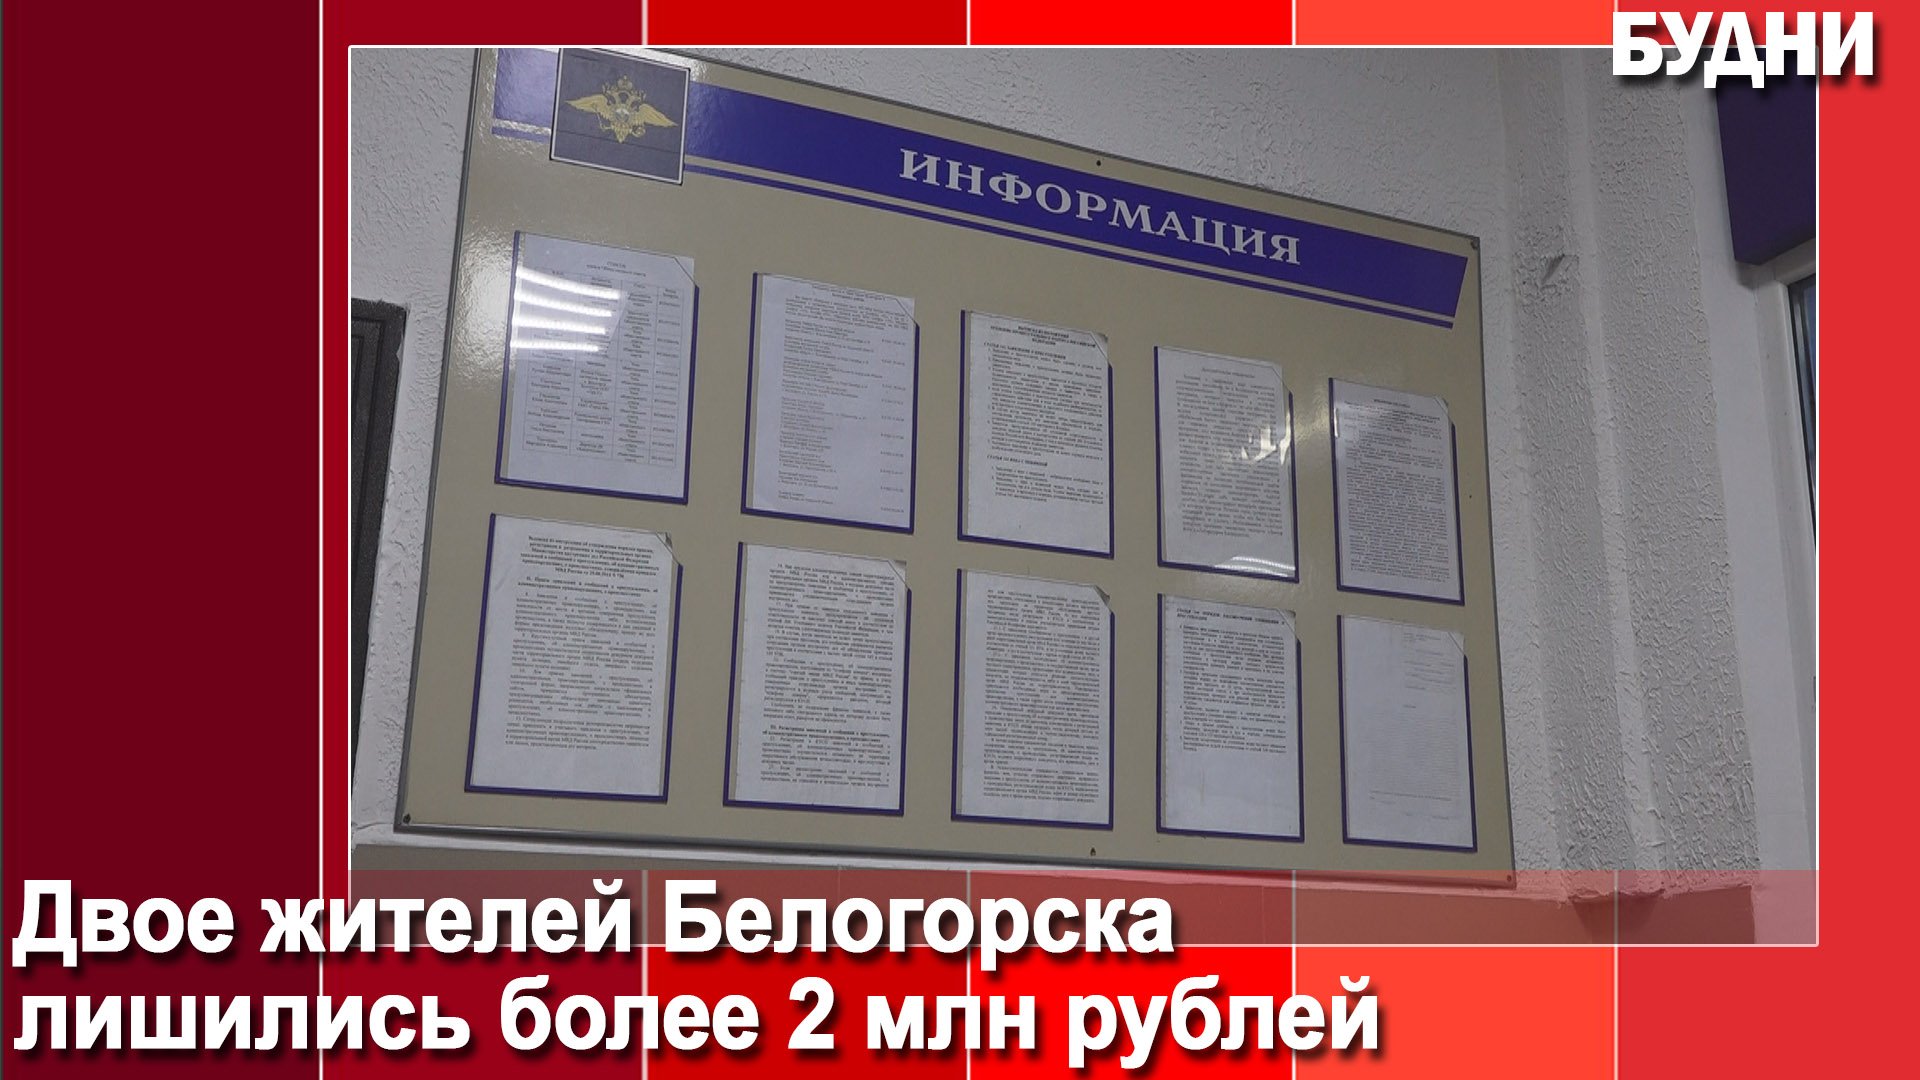 Двое жителей Белогорска перевели мошенникам более 2 млн рублей